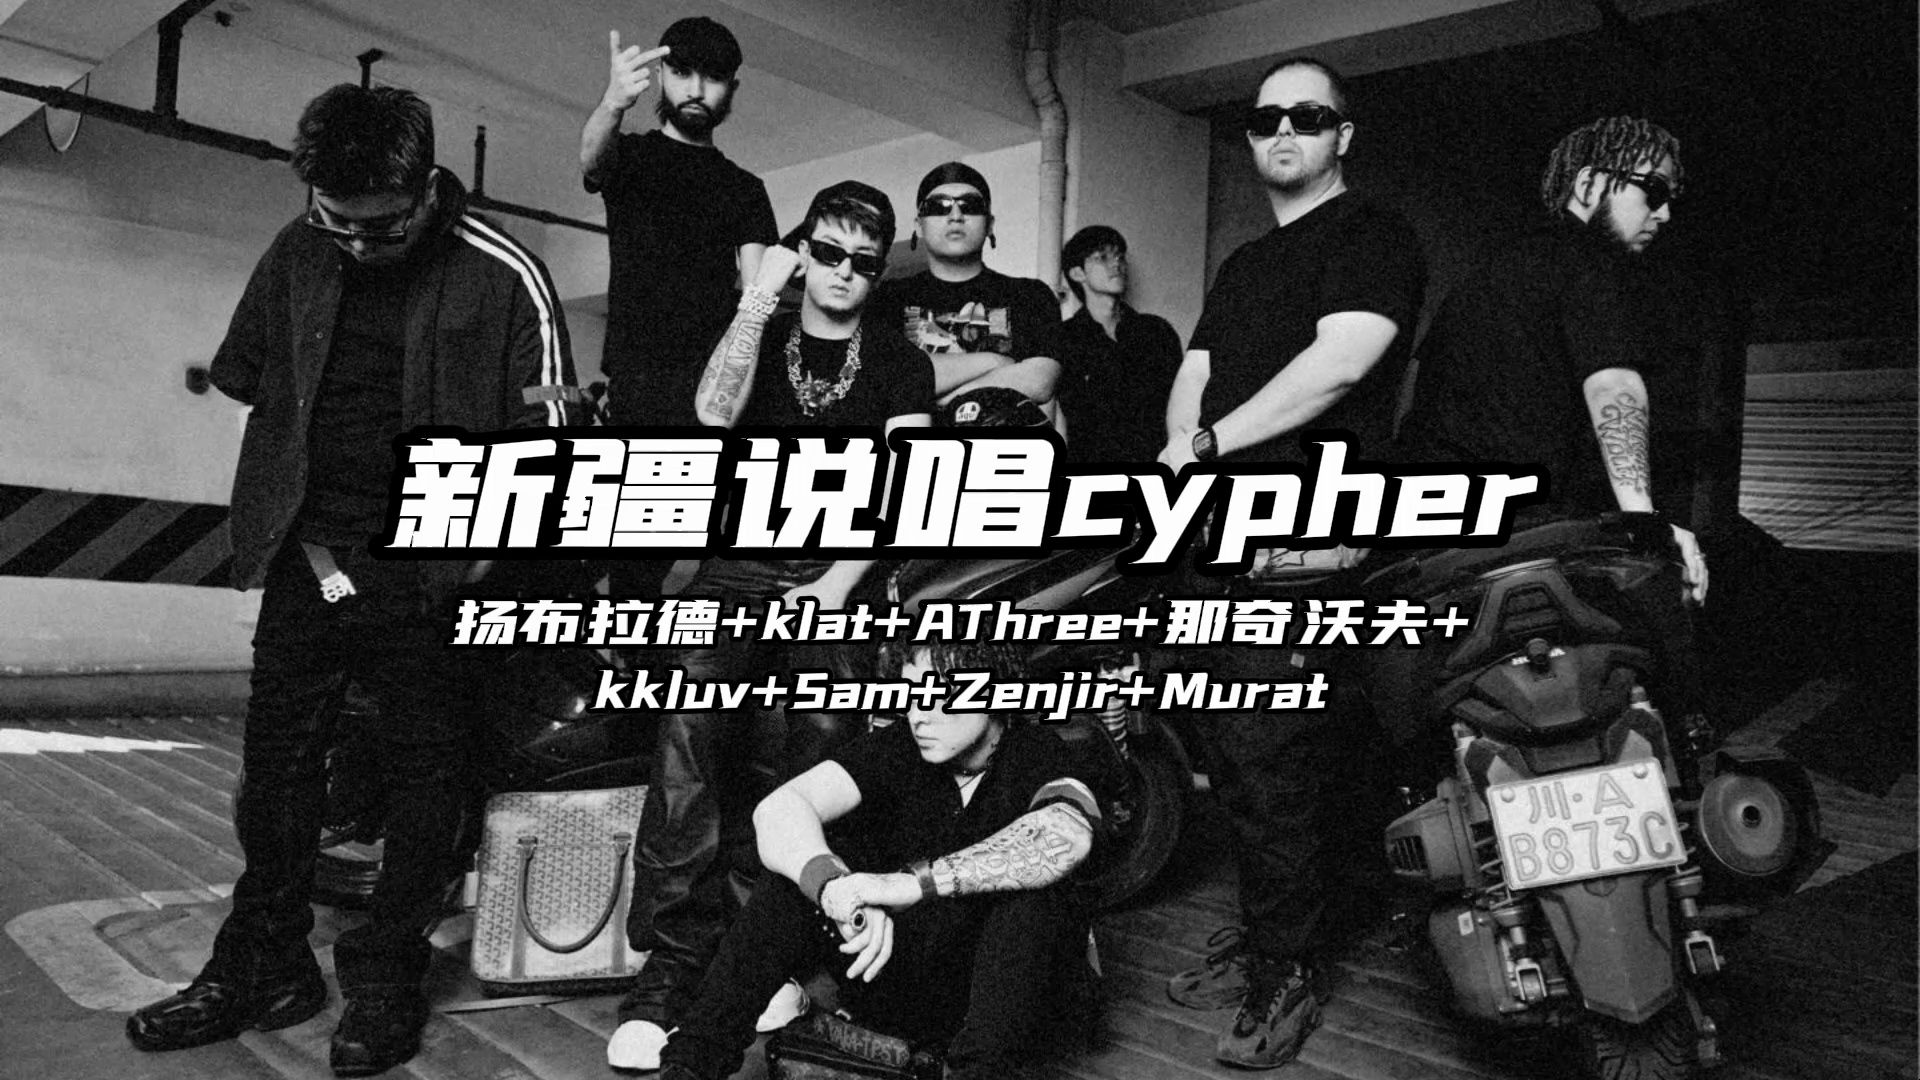 新疆说唱cypher完整版来啦！！